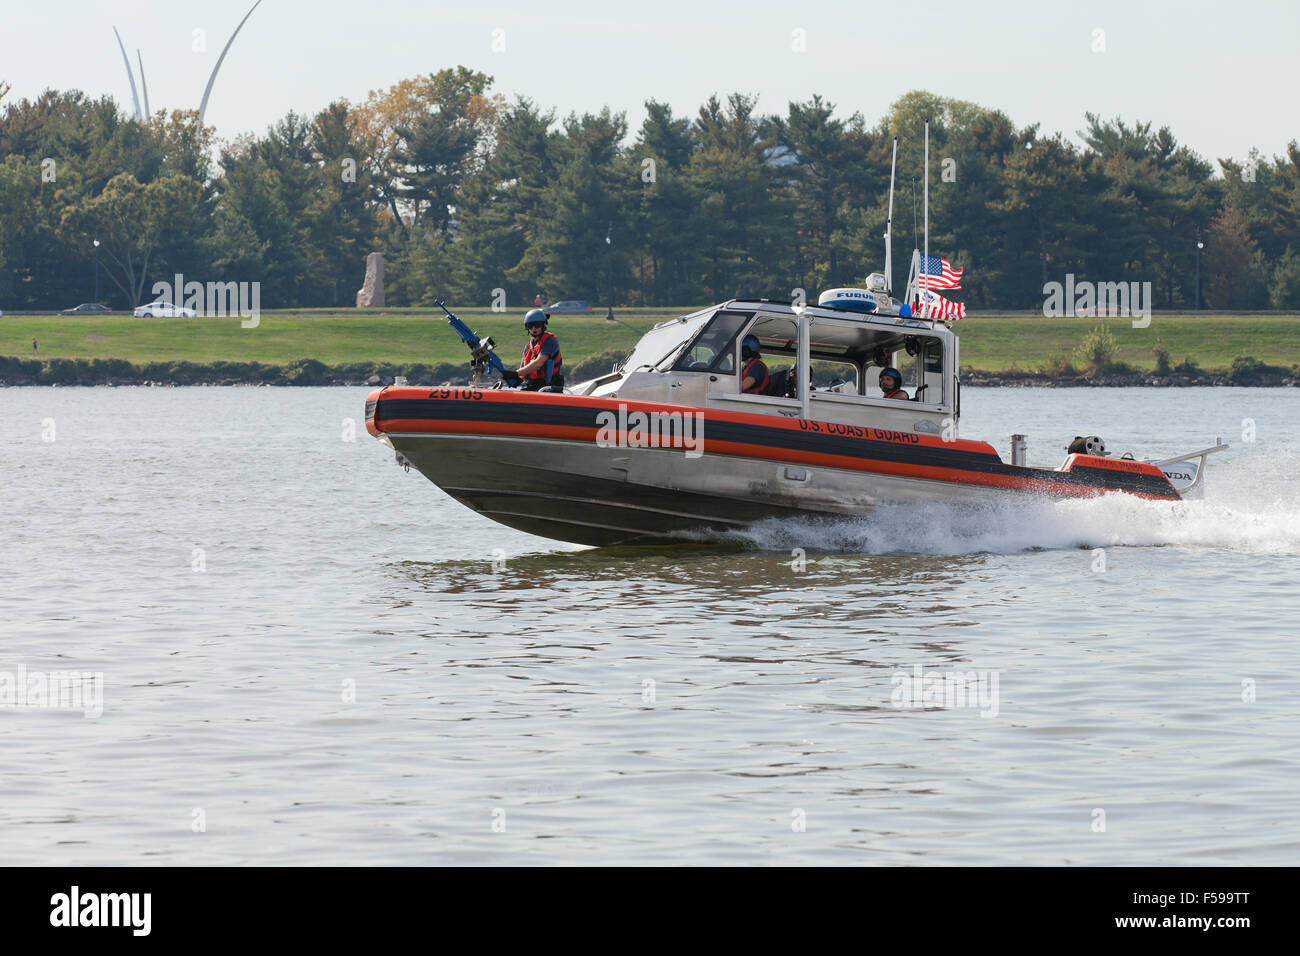 US Coast Guard metallo alluminio Shark barca sul fiume Potomac - Washington DC, Stati Uniti d'America Foto Stock